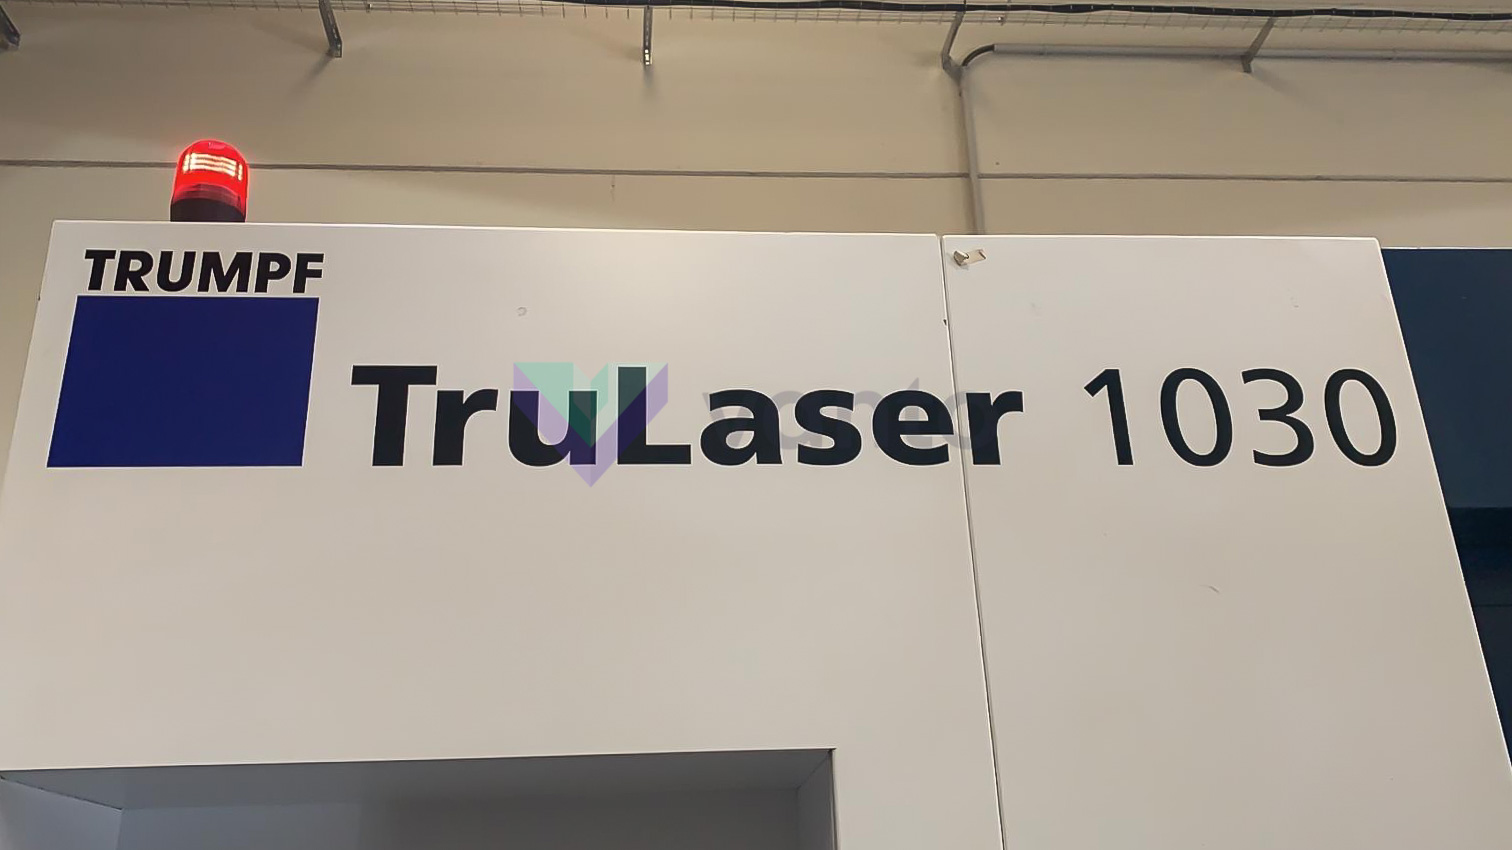 TRUMPF TruLaser 1030 fiber Laserschneidmaschine (Faser) (2015) id10375